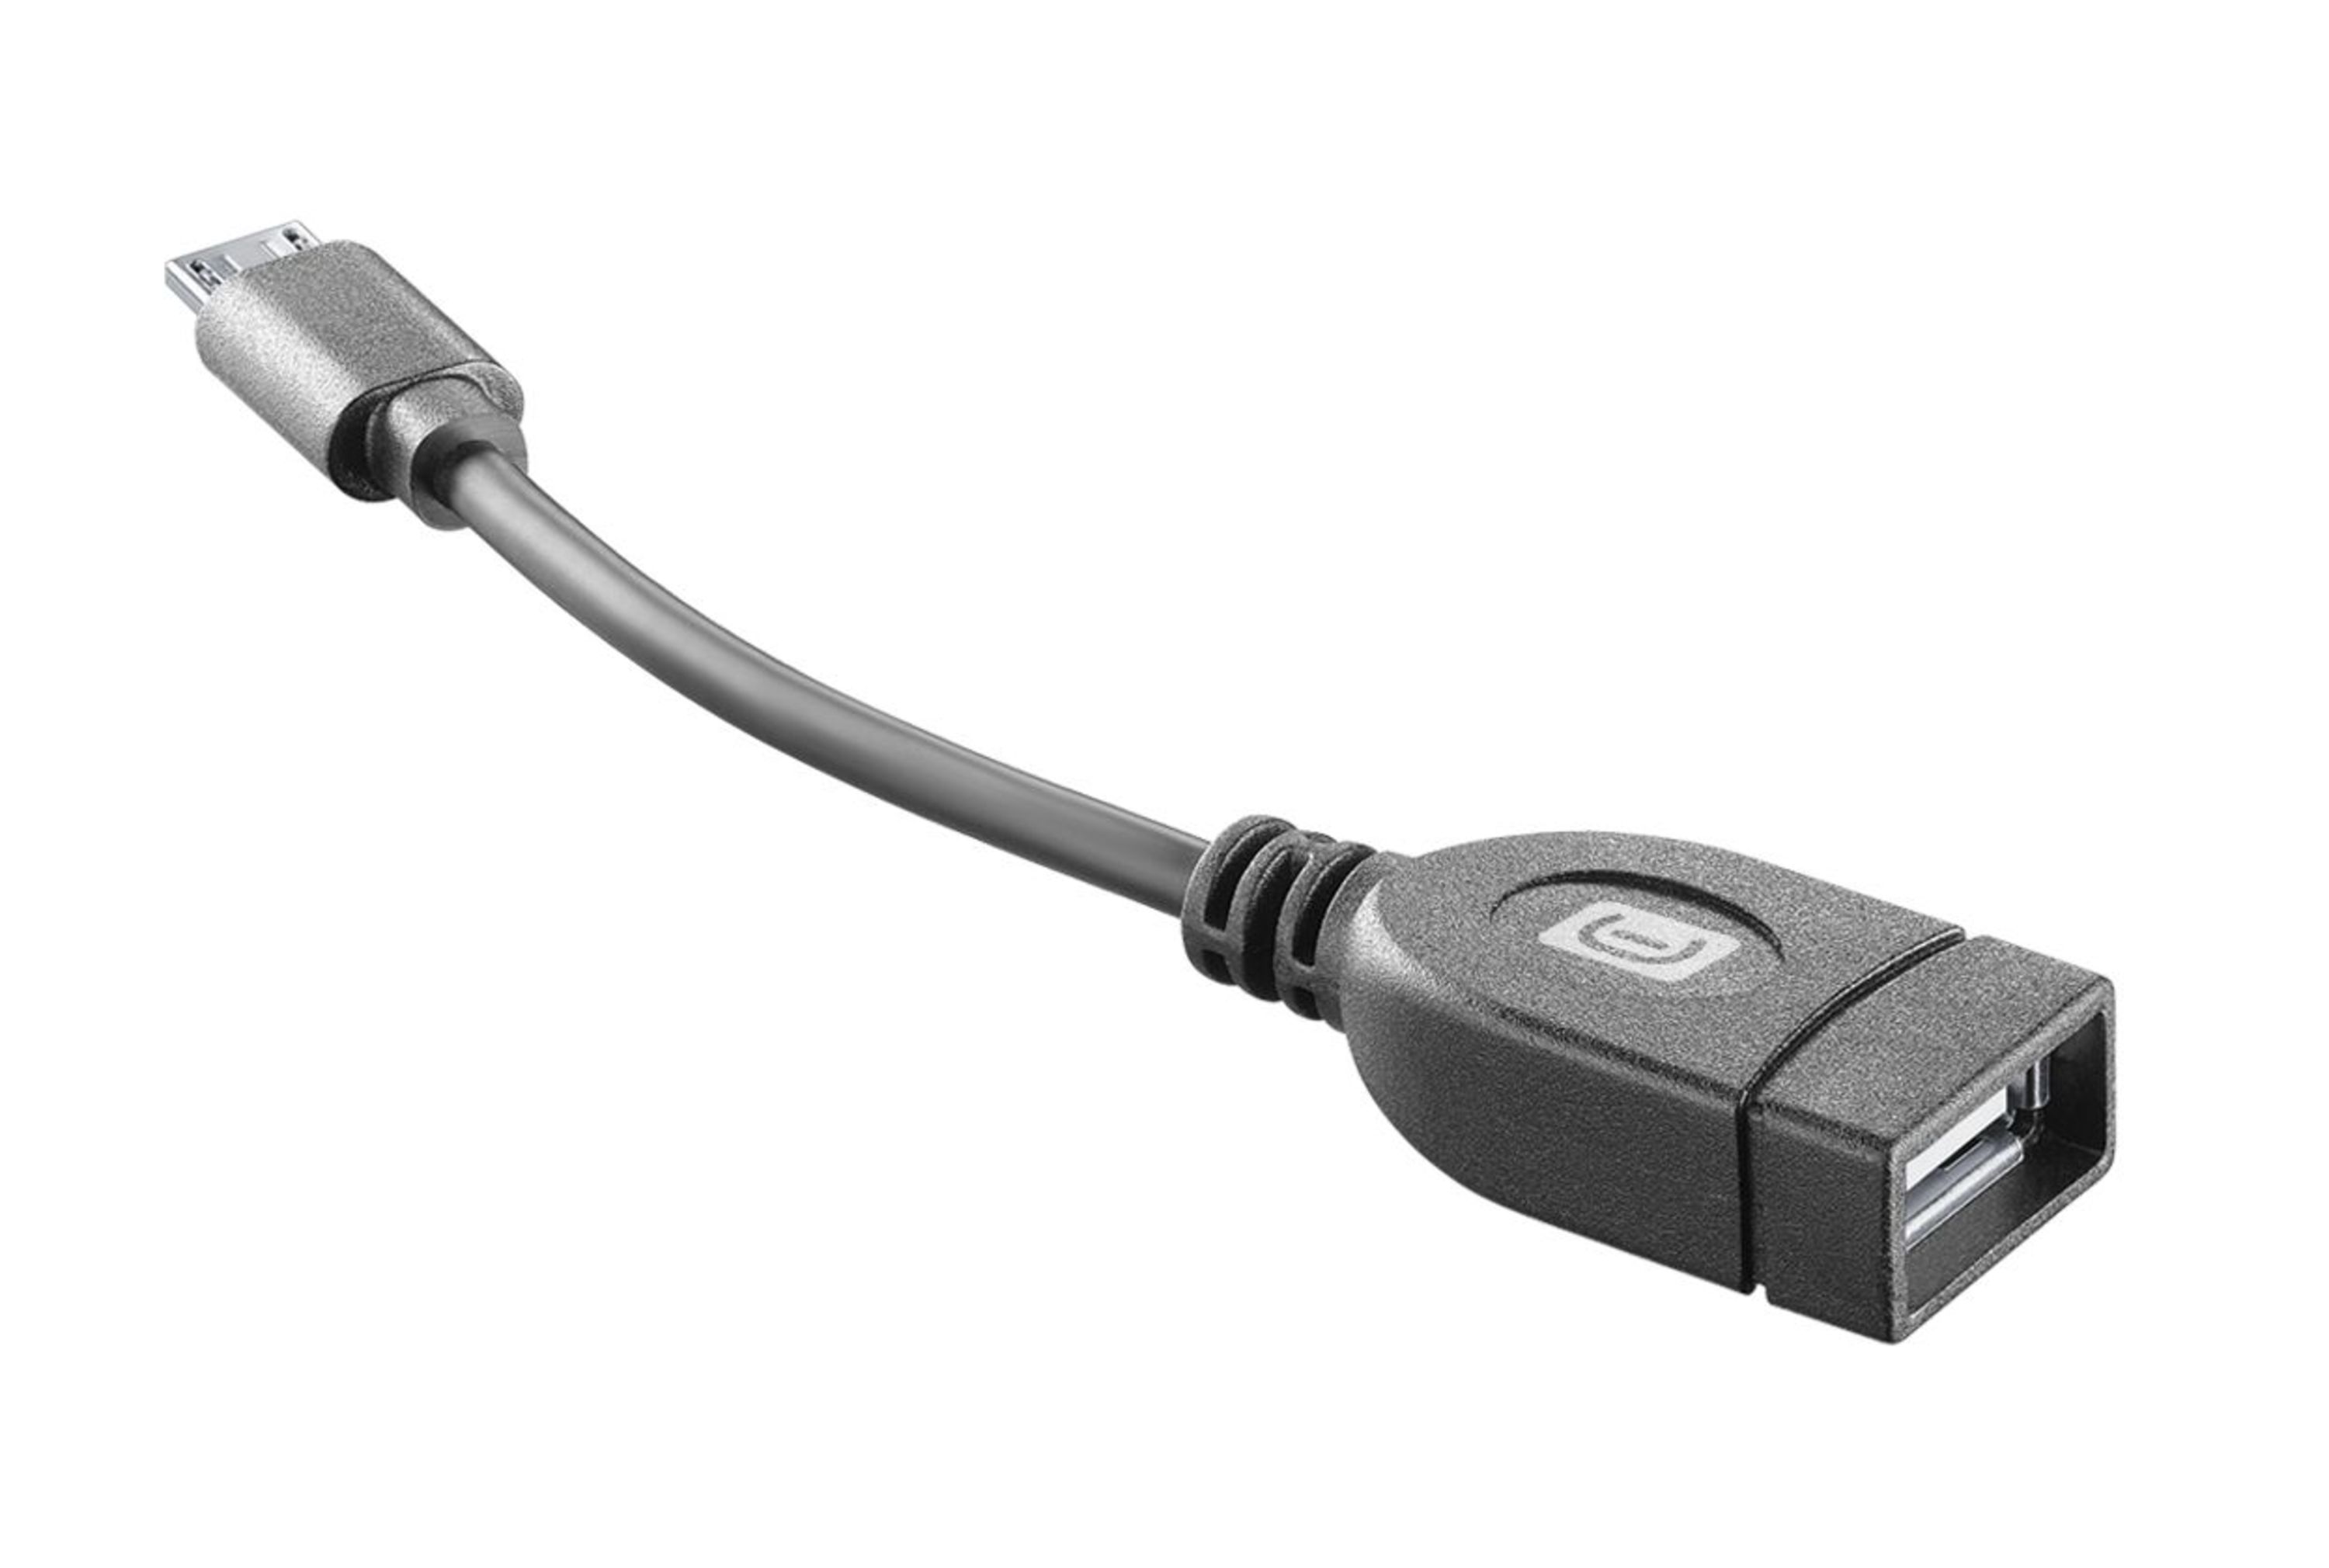 Adaptador de USB-C a USB, Adaptadores y Accesorios, Ricarica e Utilità